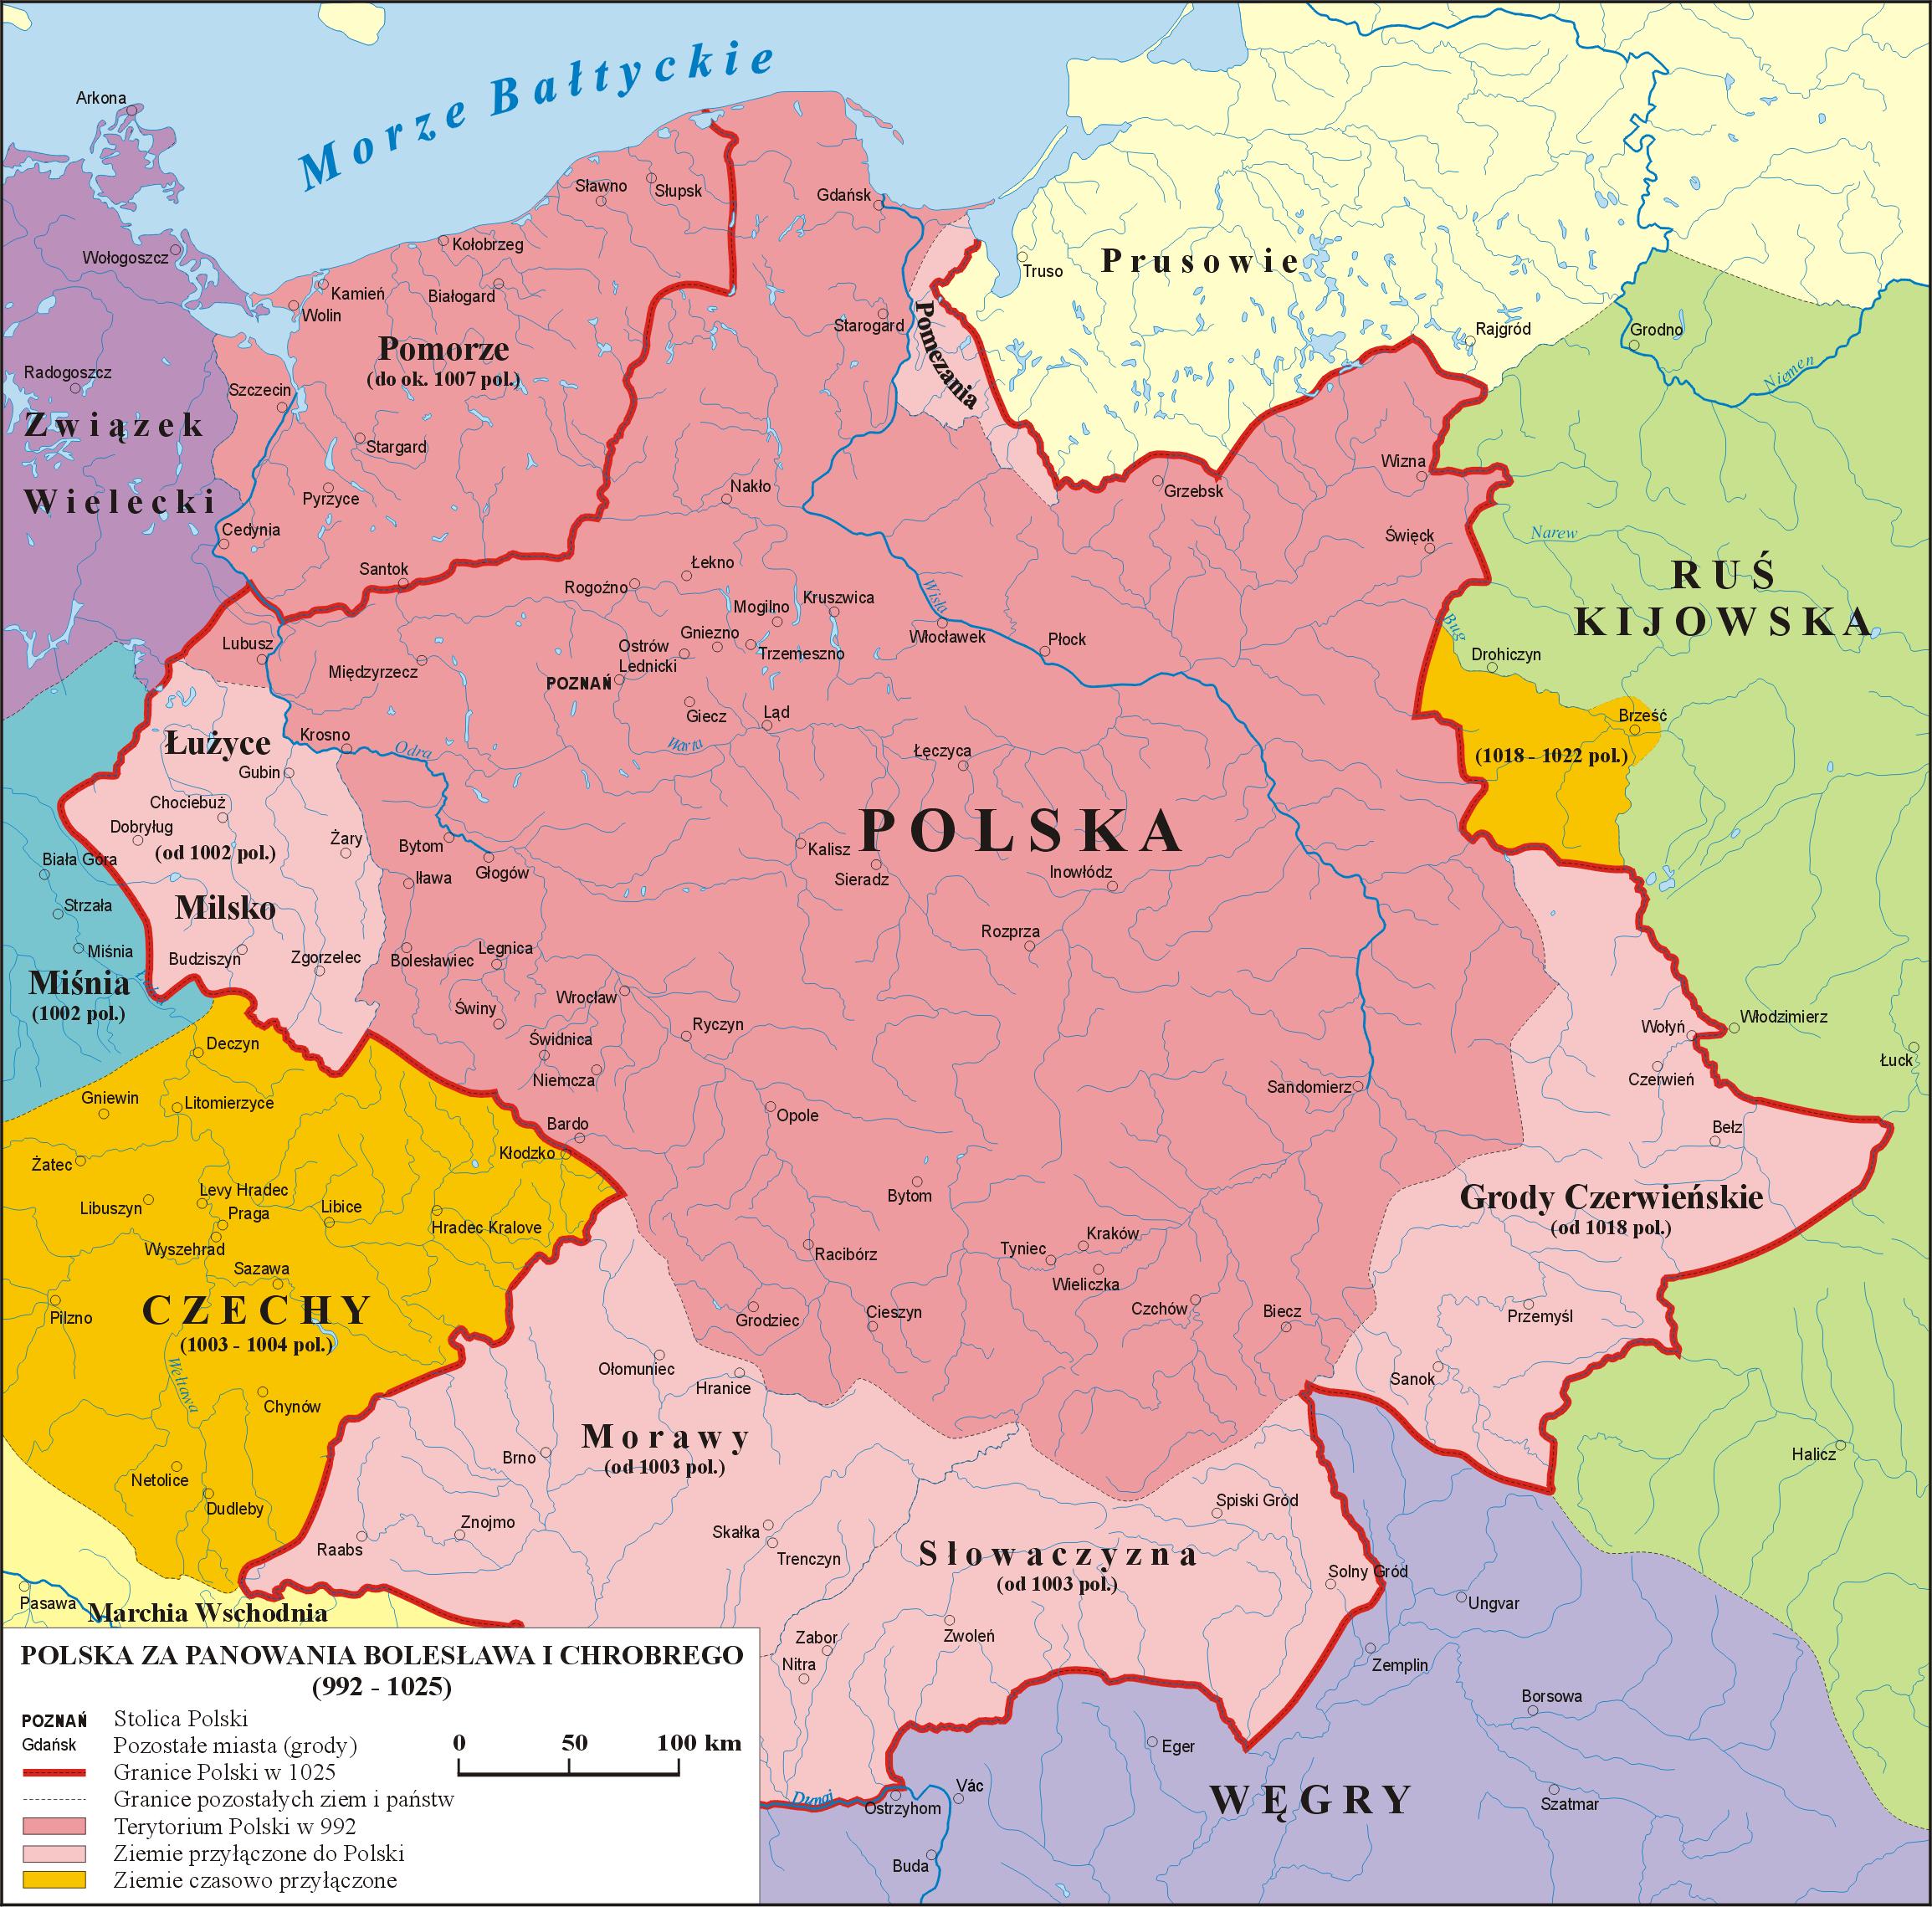 曾经强大到令俄罗斯望而生畏的波兰,后来为何屡遭瓜分灭国?